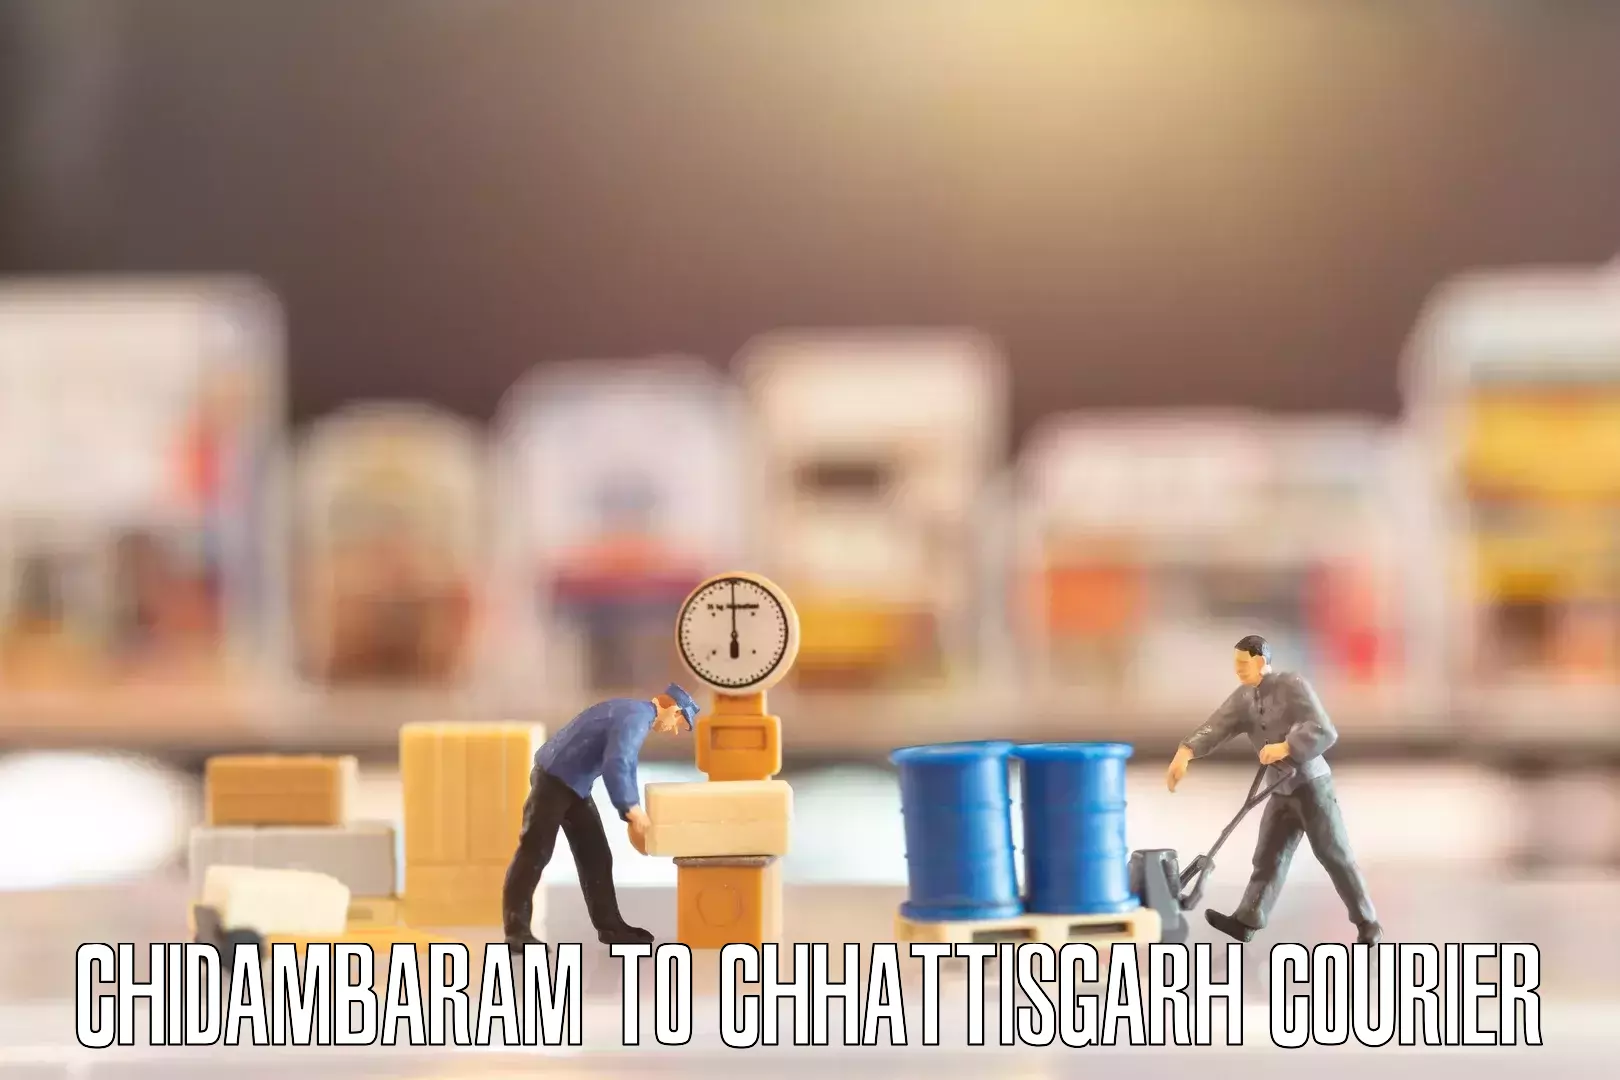 Local home movers Chidambaram to Chhattisgarh